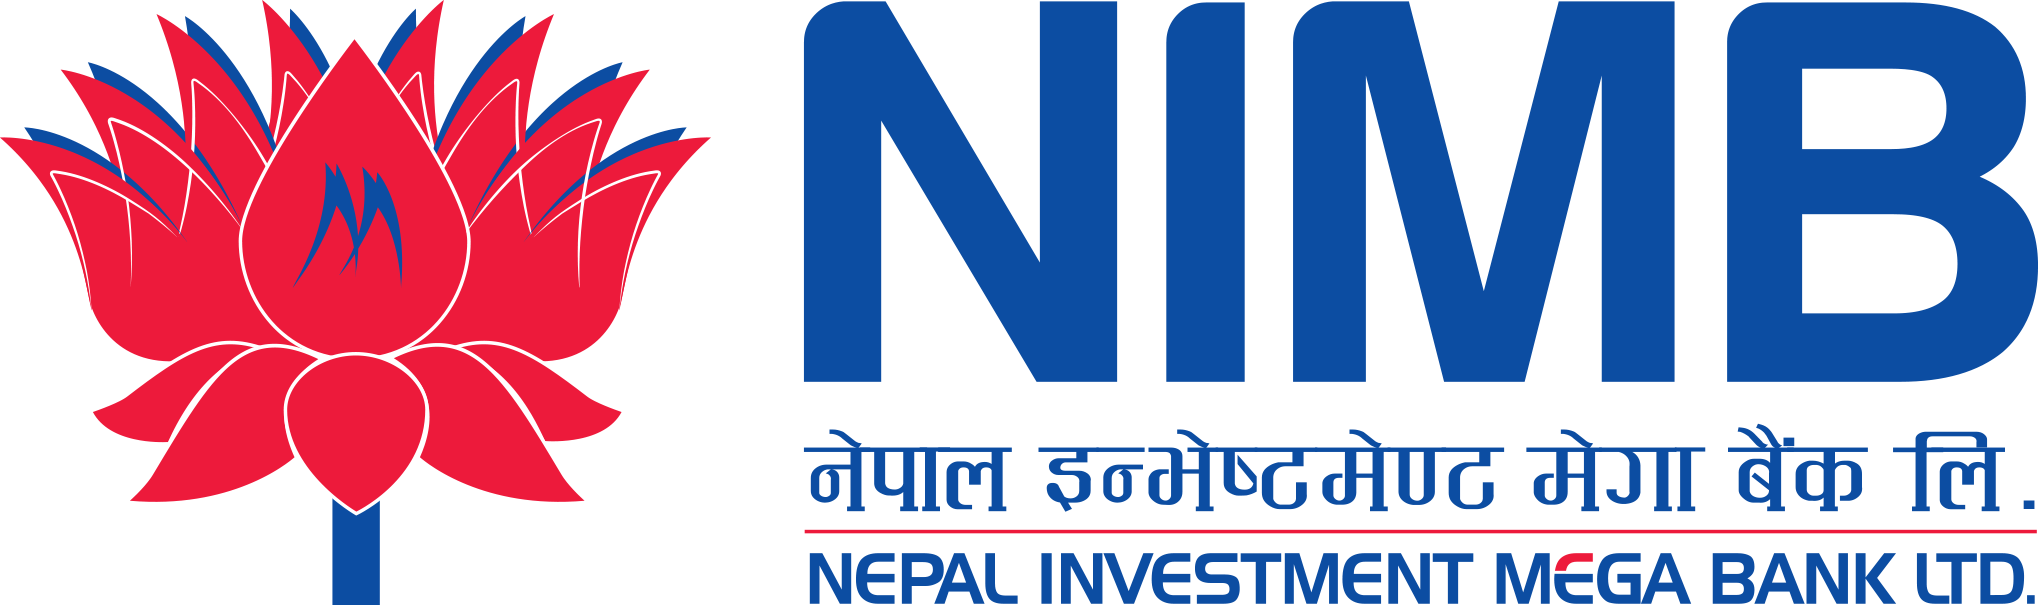 नेपाल इन्भेष्टमेन्ट मेगा बैंकको साधारण सभा सम्पन्न